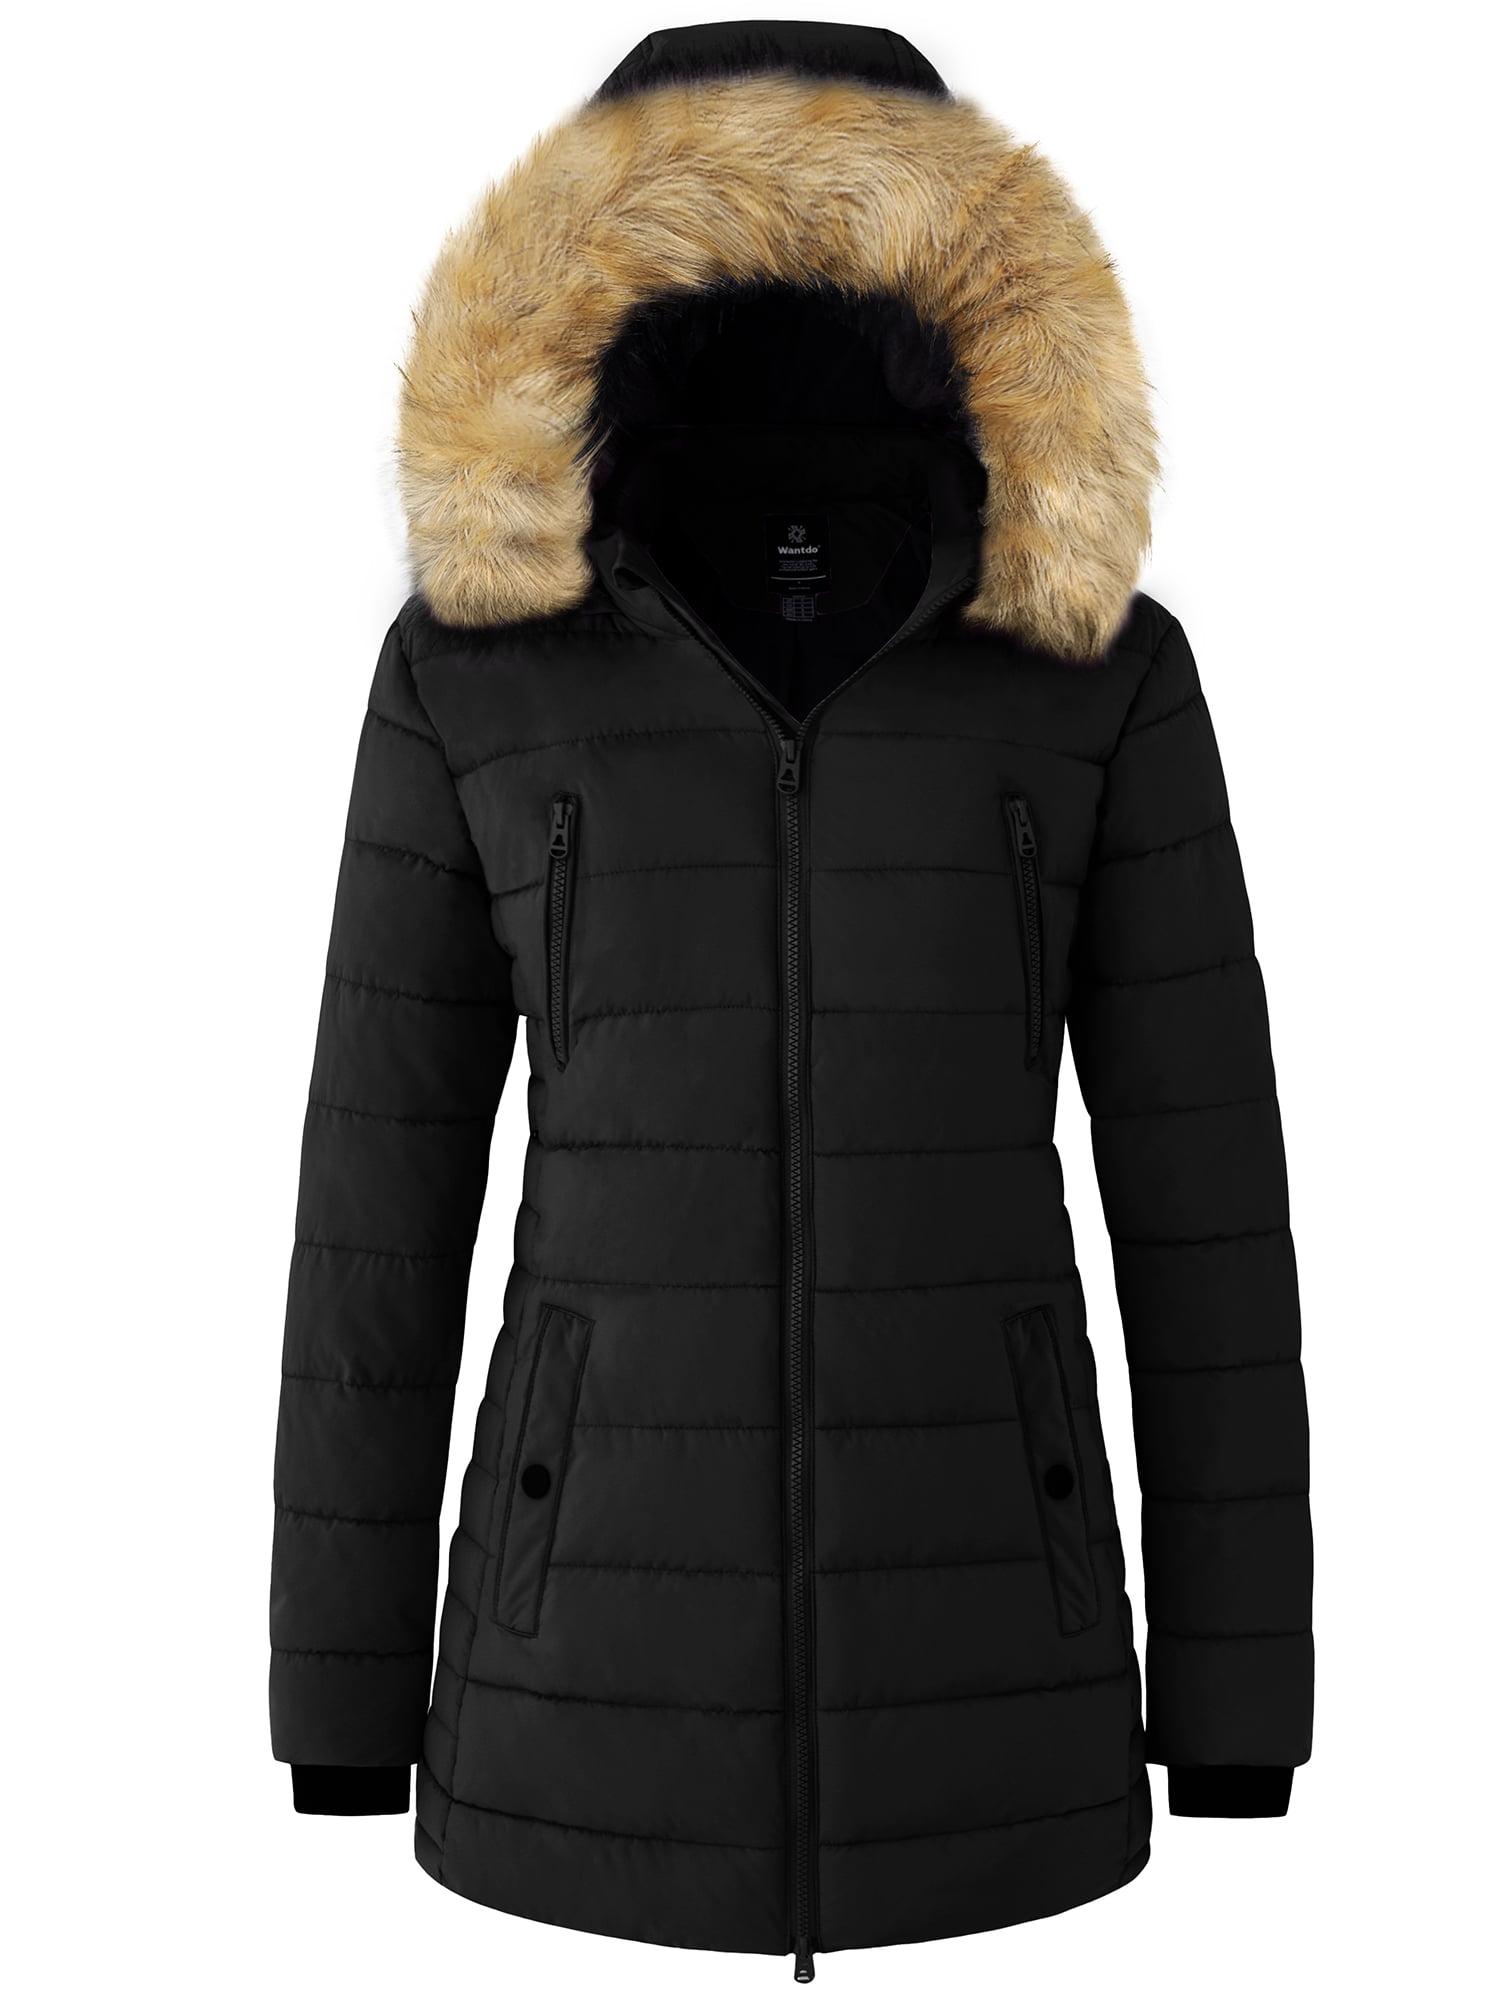 Wantdo Women's Plus Size Winter Coat Waterproof Puffer Coat Long Parka ...